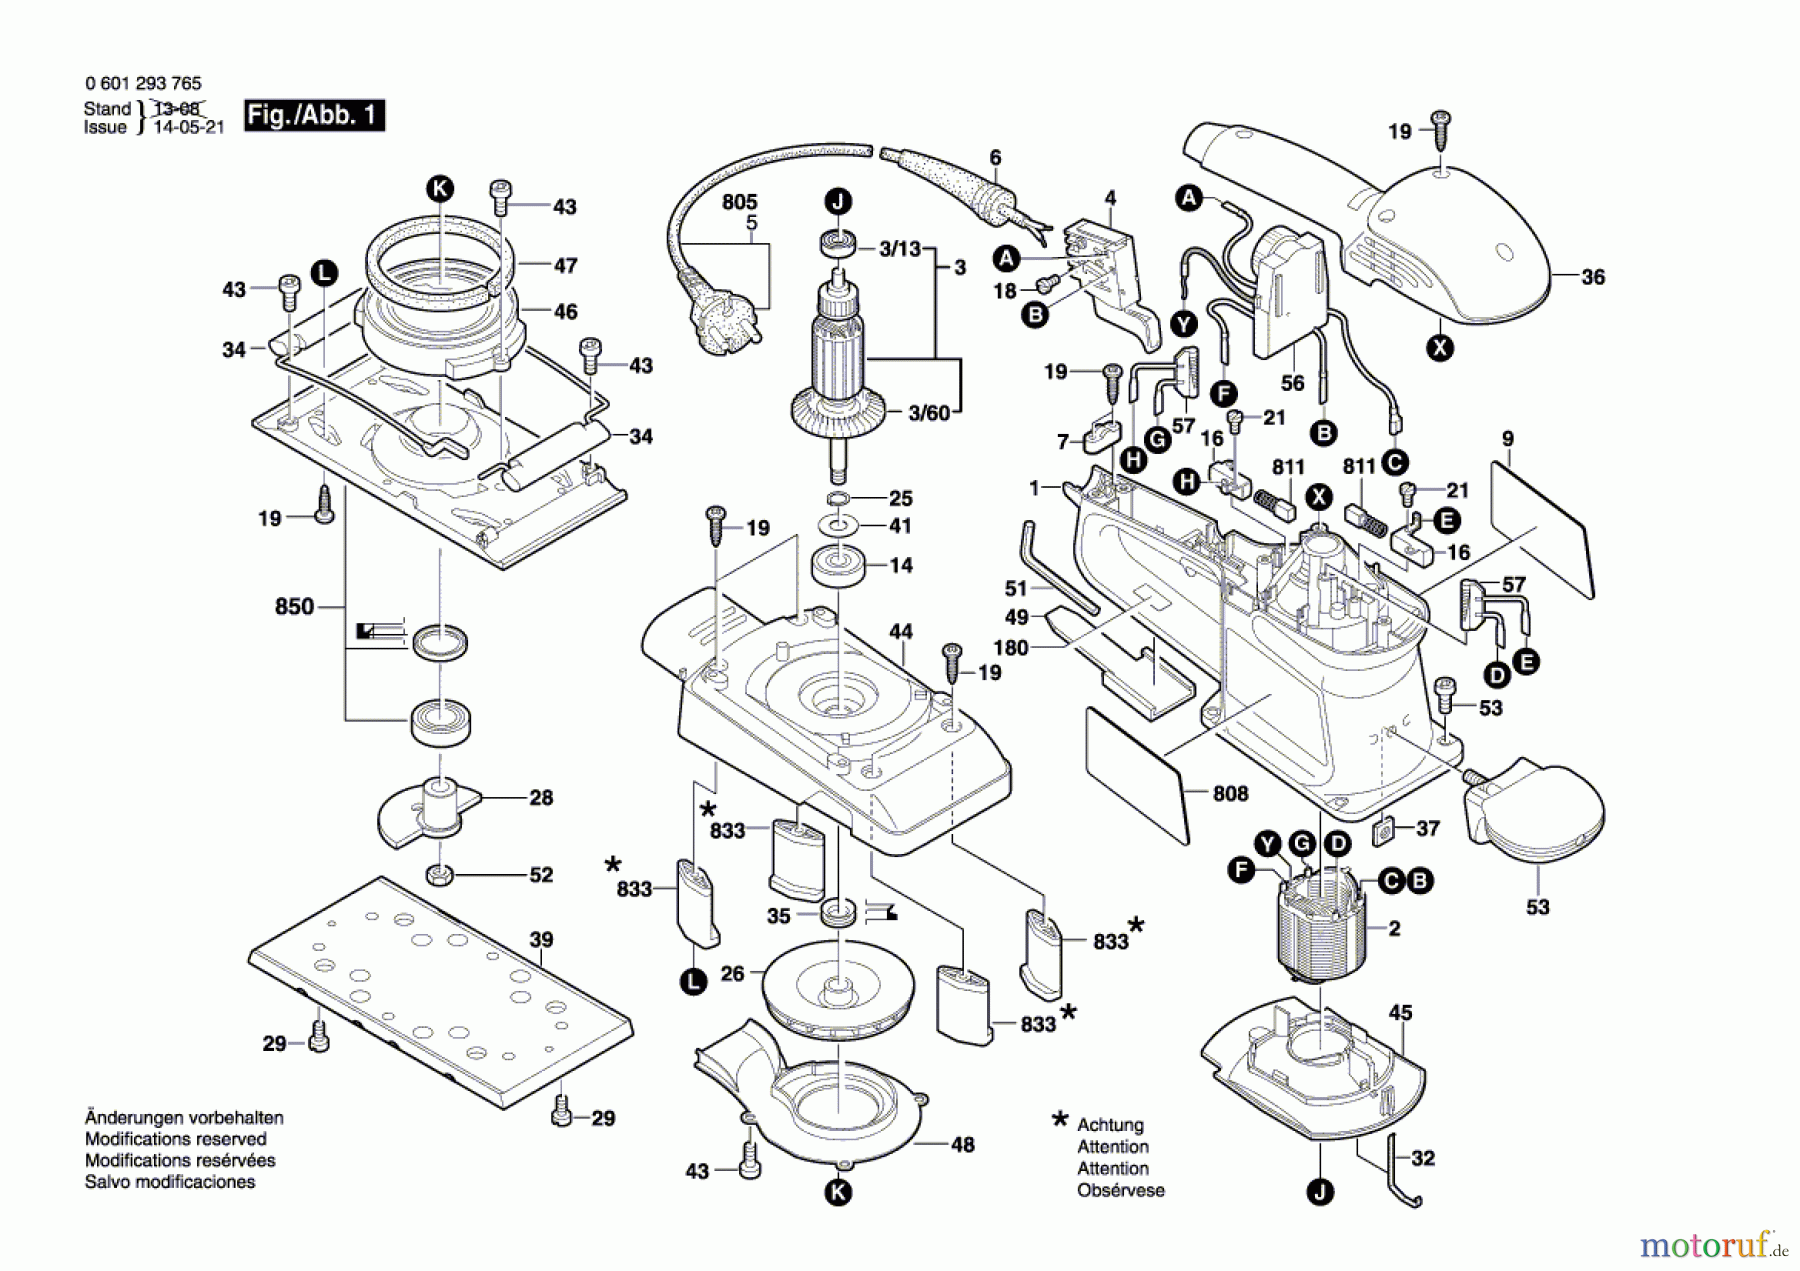  Bosch Werkzeug Schwingschleifer BOS 280 Seite 1